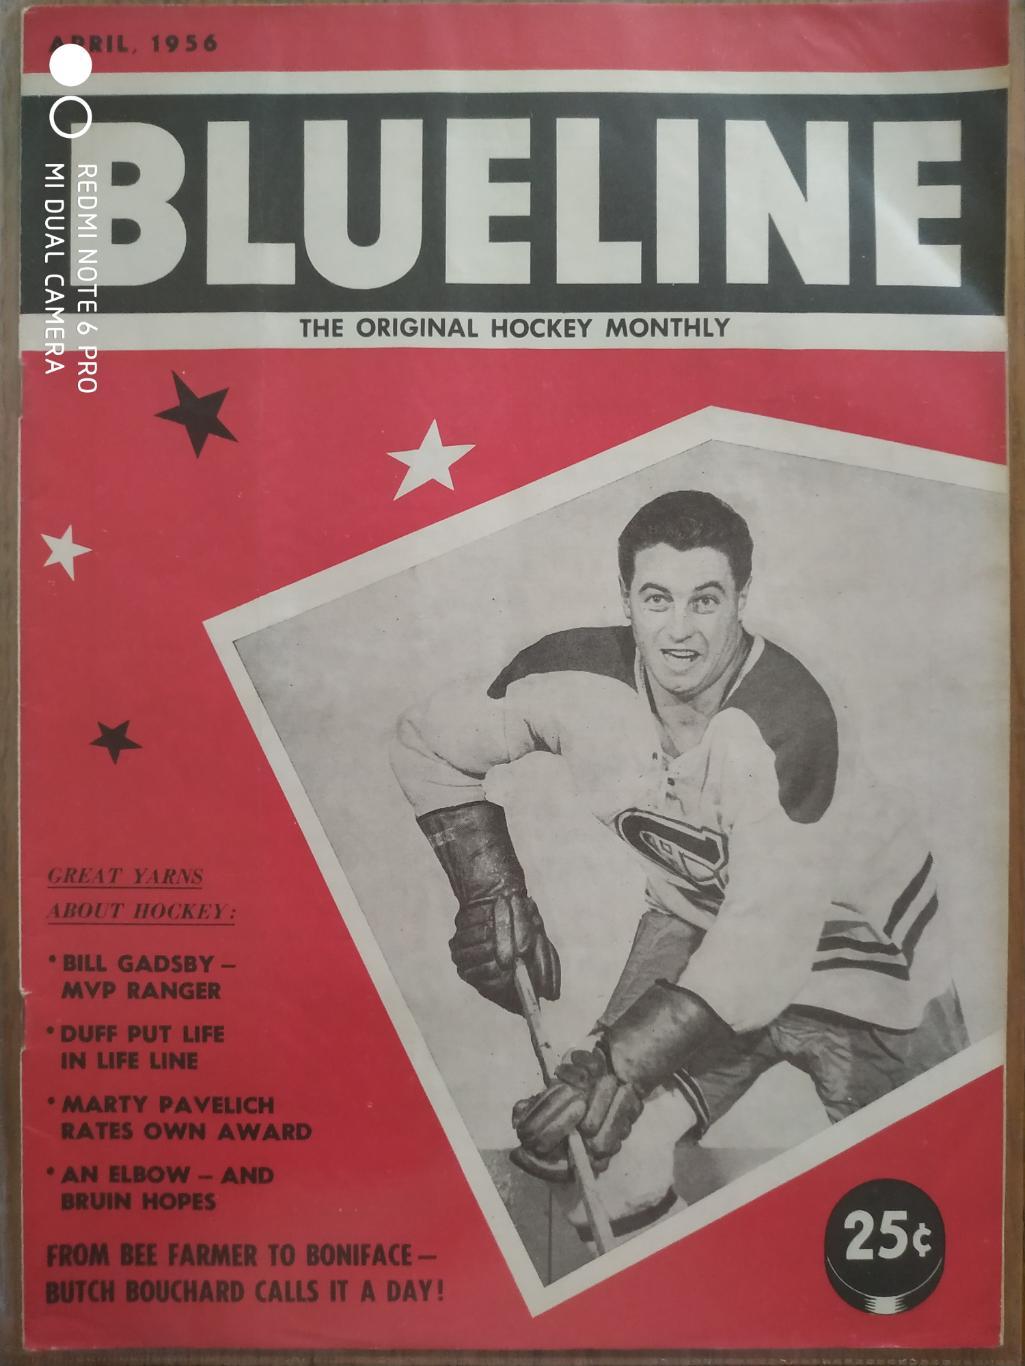 ЖУРНАЛ ЕЖЕМЕСЯЧНИК НХЛ NHL 1956 APRIL THE HOCKEY MONTHLY BLUELINE